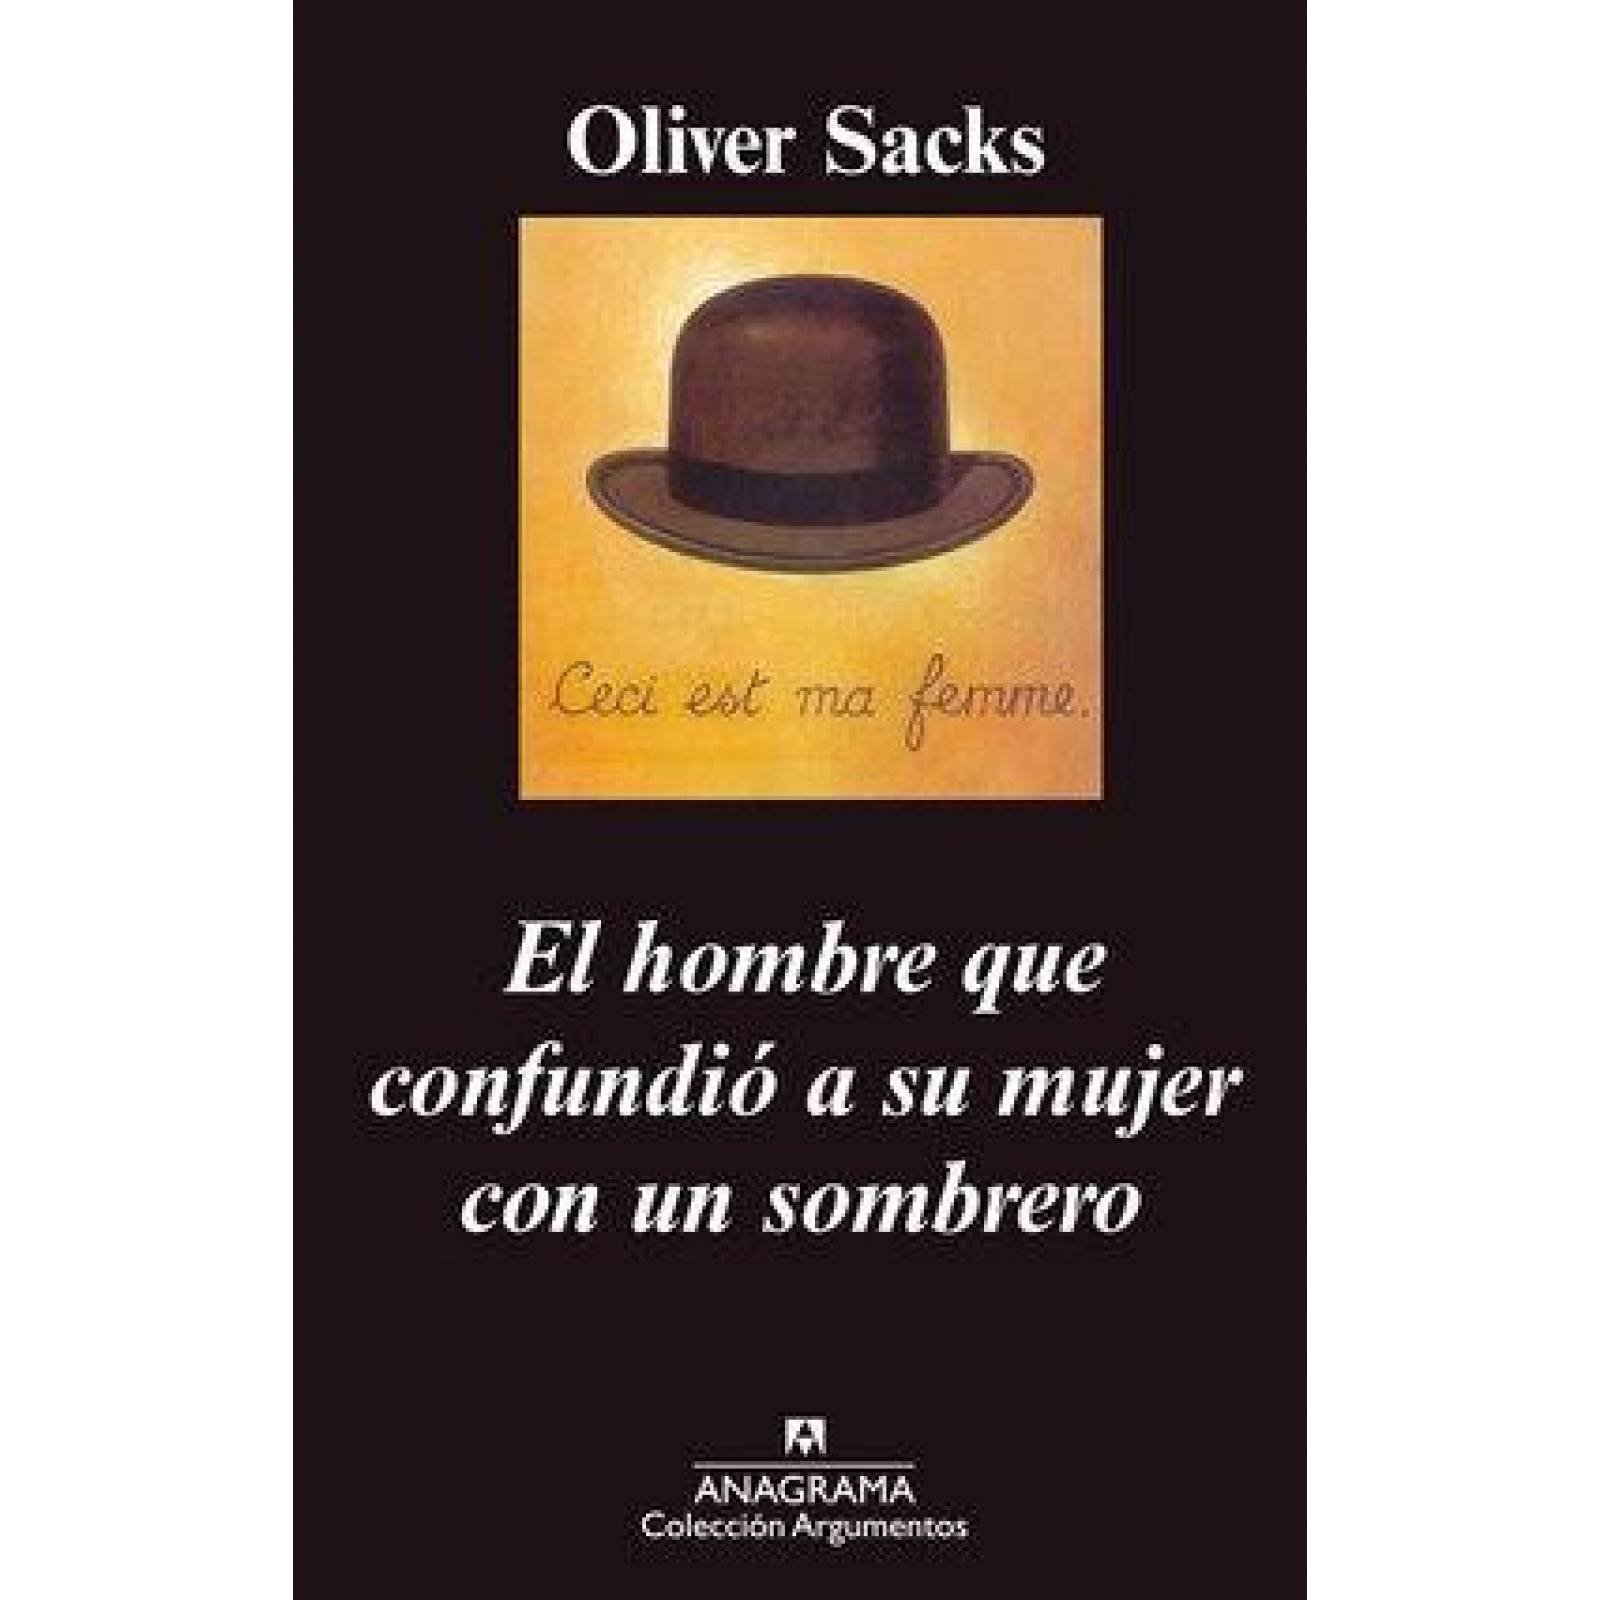 El hombre que confundió a su mujer con un sombrero (Oliver Sacks